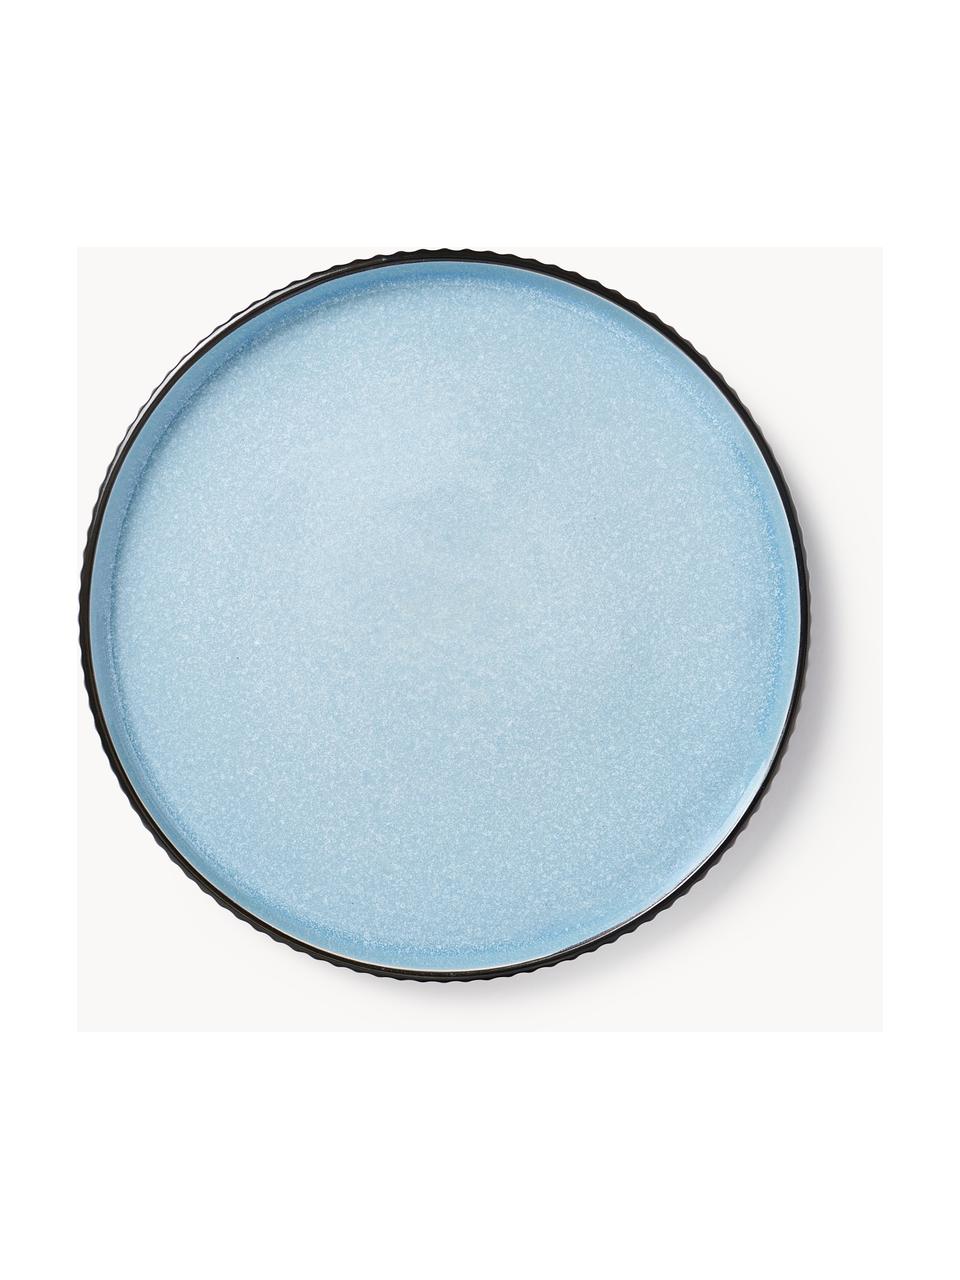 Platos postre con relieve Bora, 4 uds., Cerámica esmaltada, Azul claro brillante, negro mate, Ø 21 cm